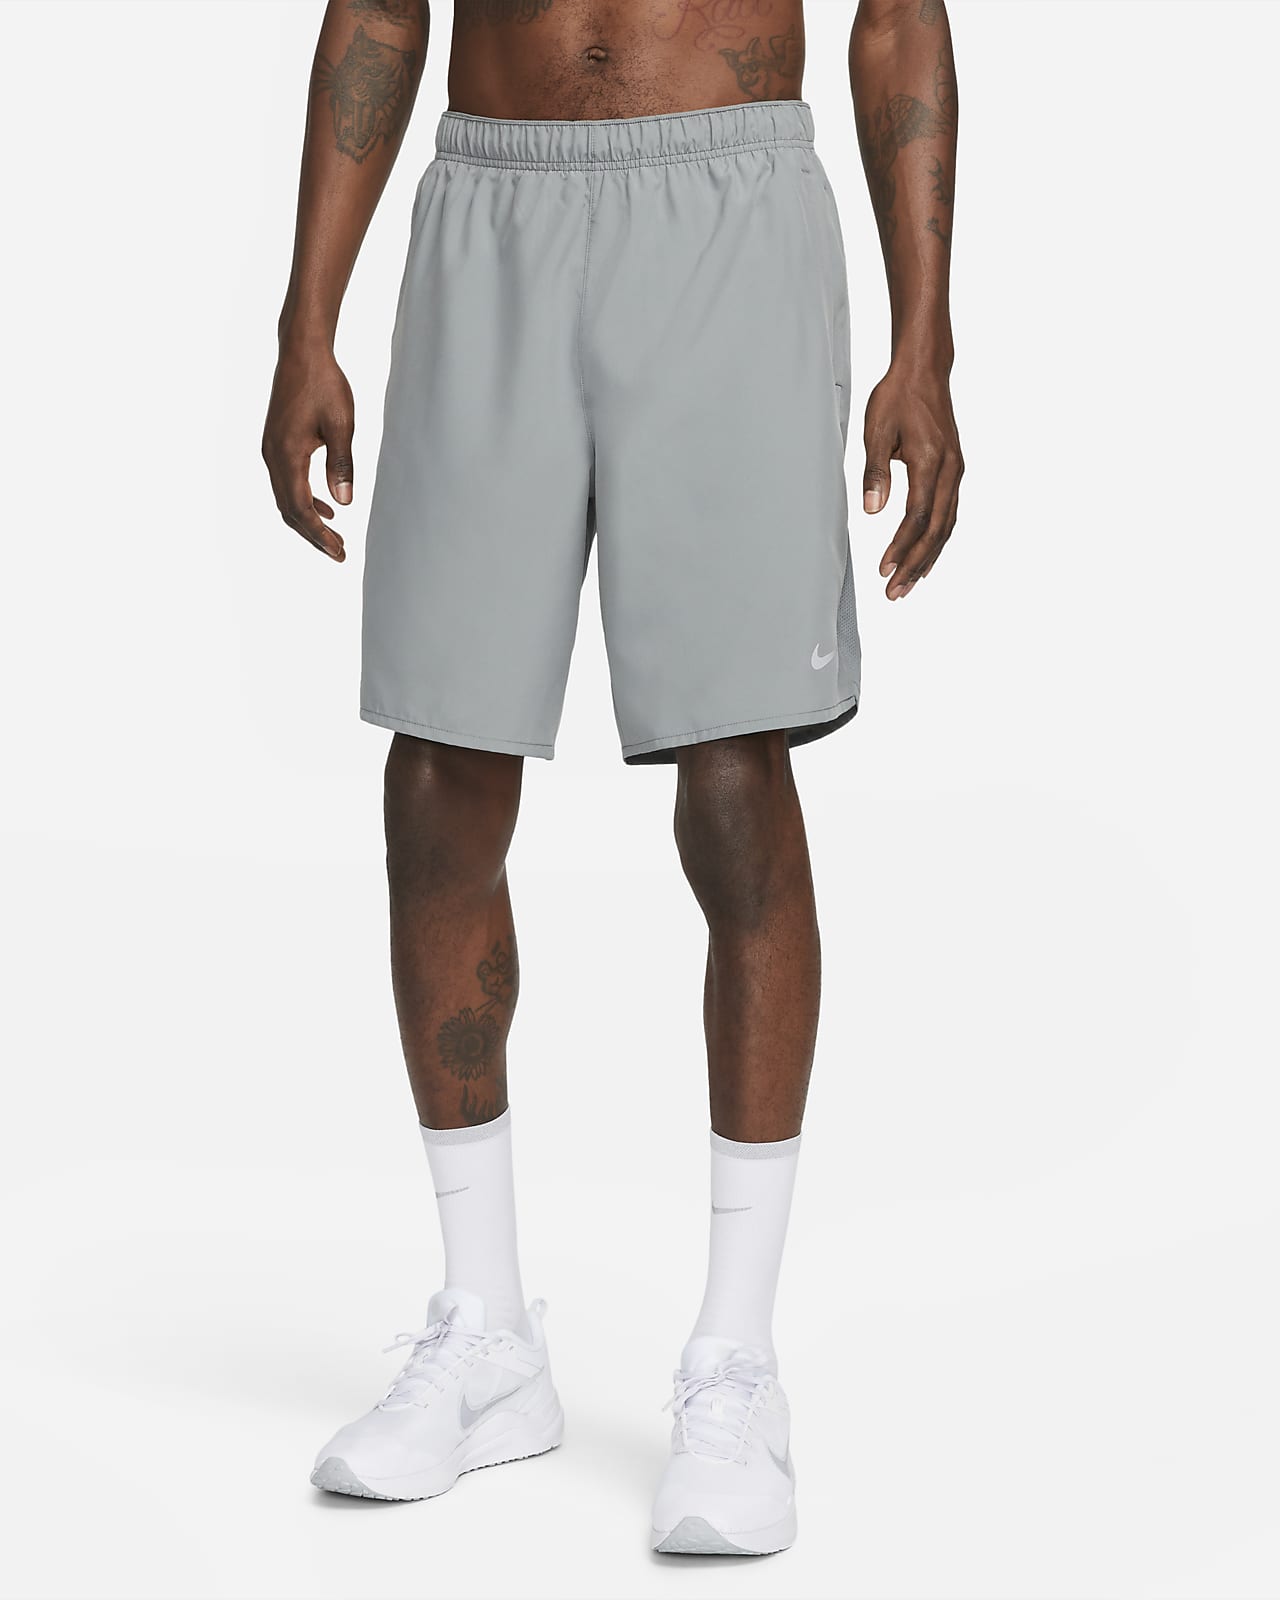 Nike Challenger Men's Dri-FIT 23cm (approx.) Unlined Versatile Shorts